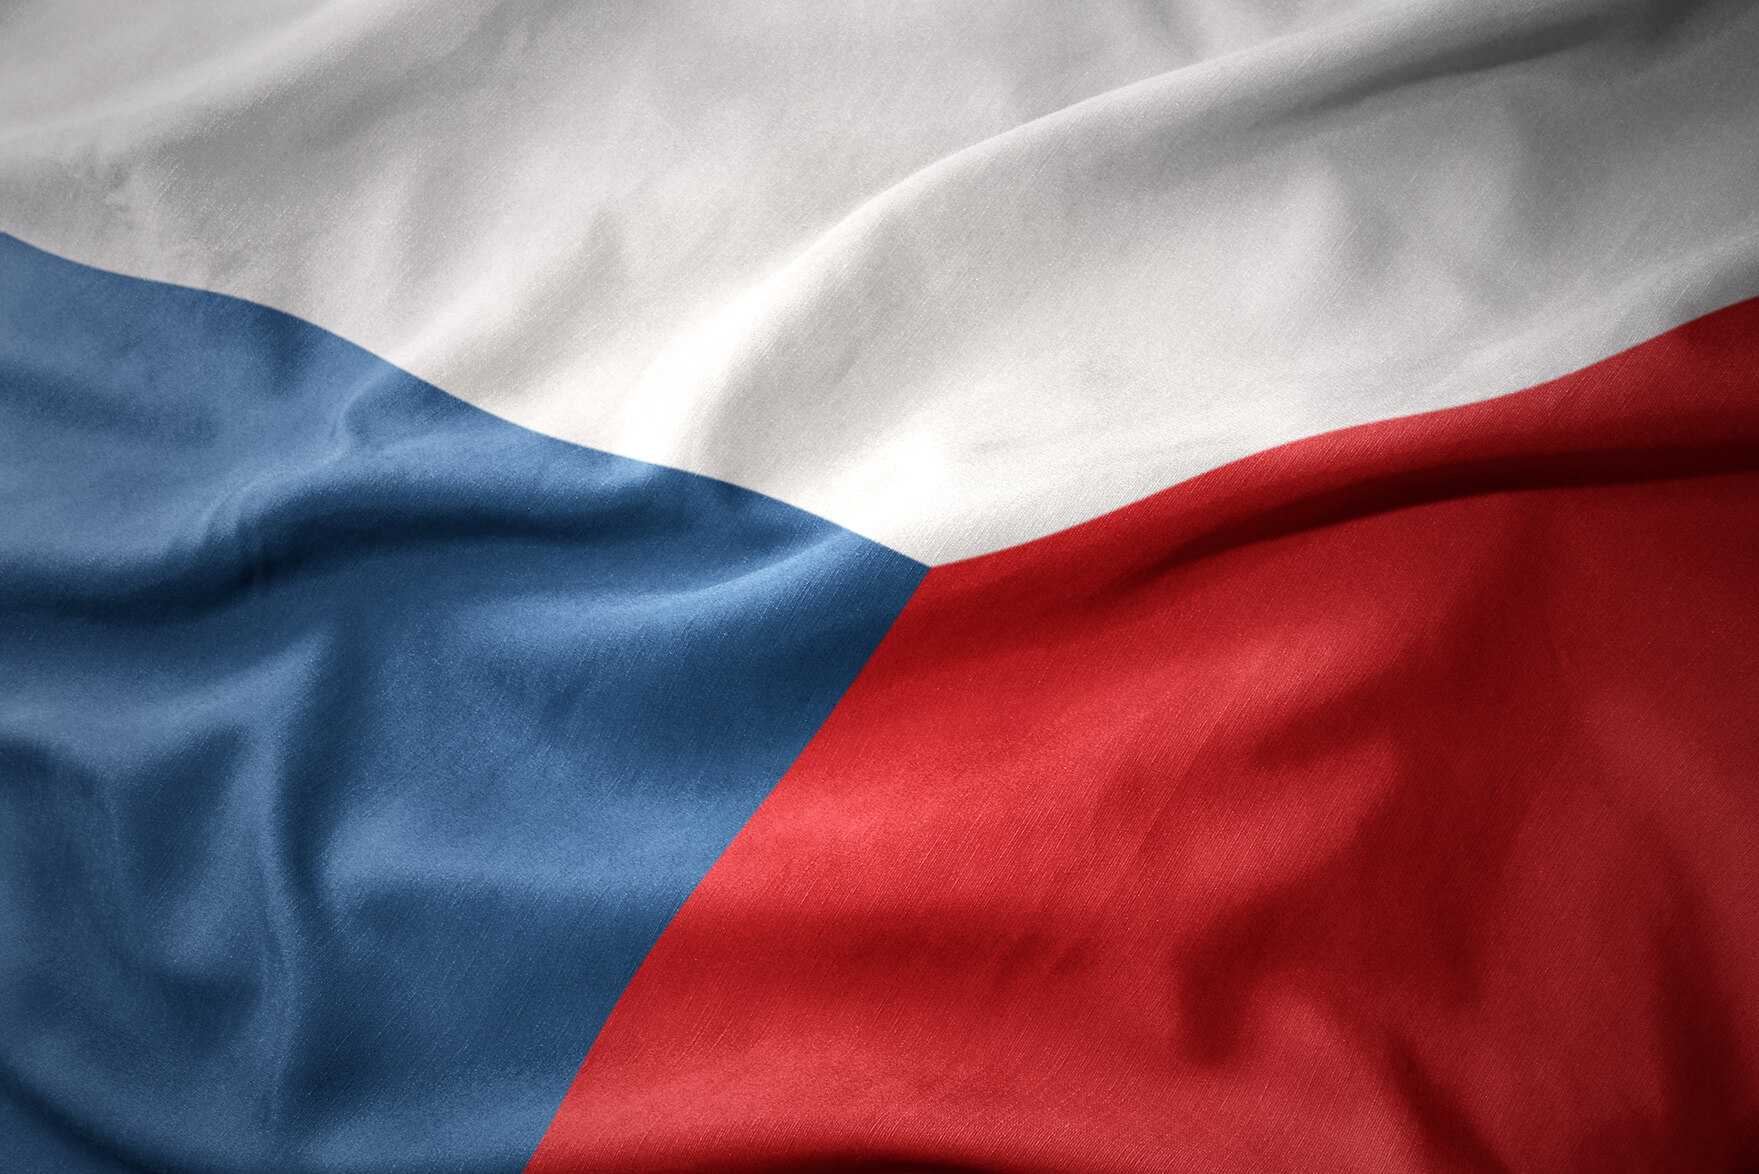 Fahne der Tschechischen Republik: weiß, blau, rot.